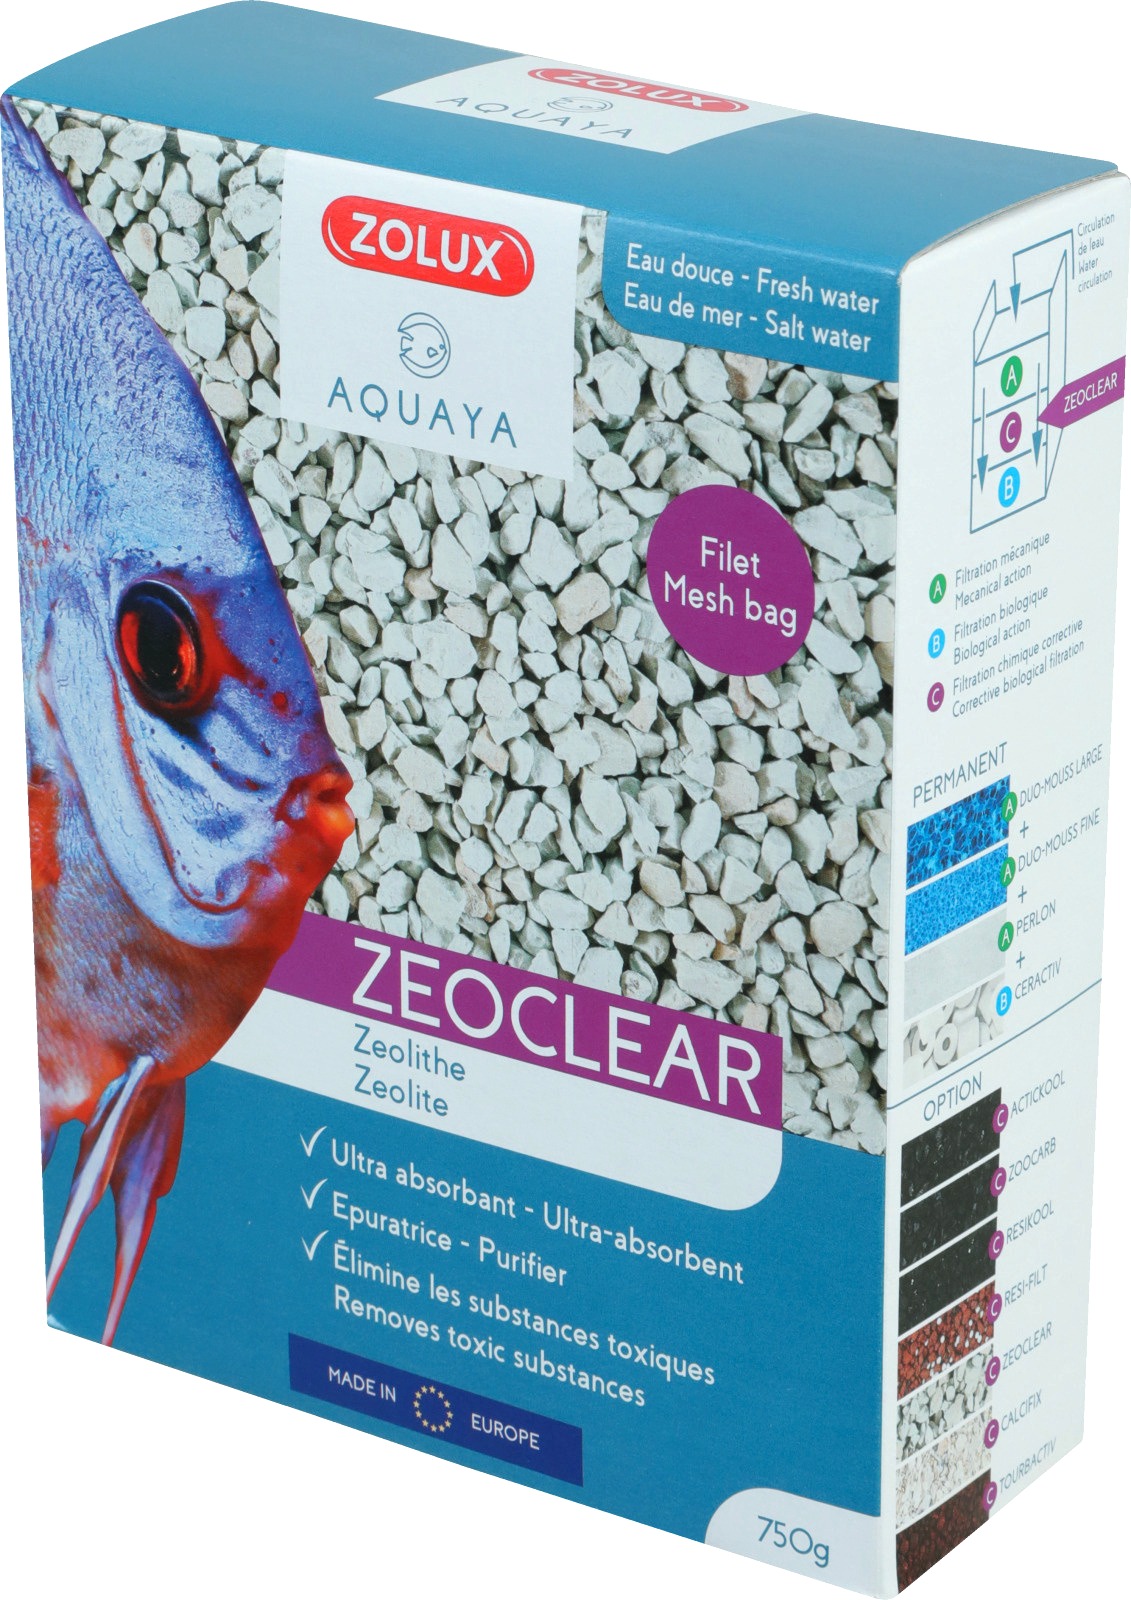 zolux-zeoclear-1l-zeolite-de-filtration-mineral-et-depolluante-pour-eau-douce-et-eau-de-mer